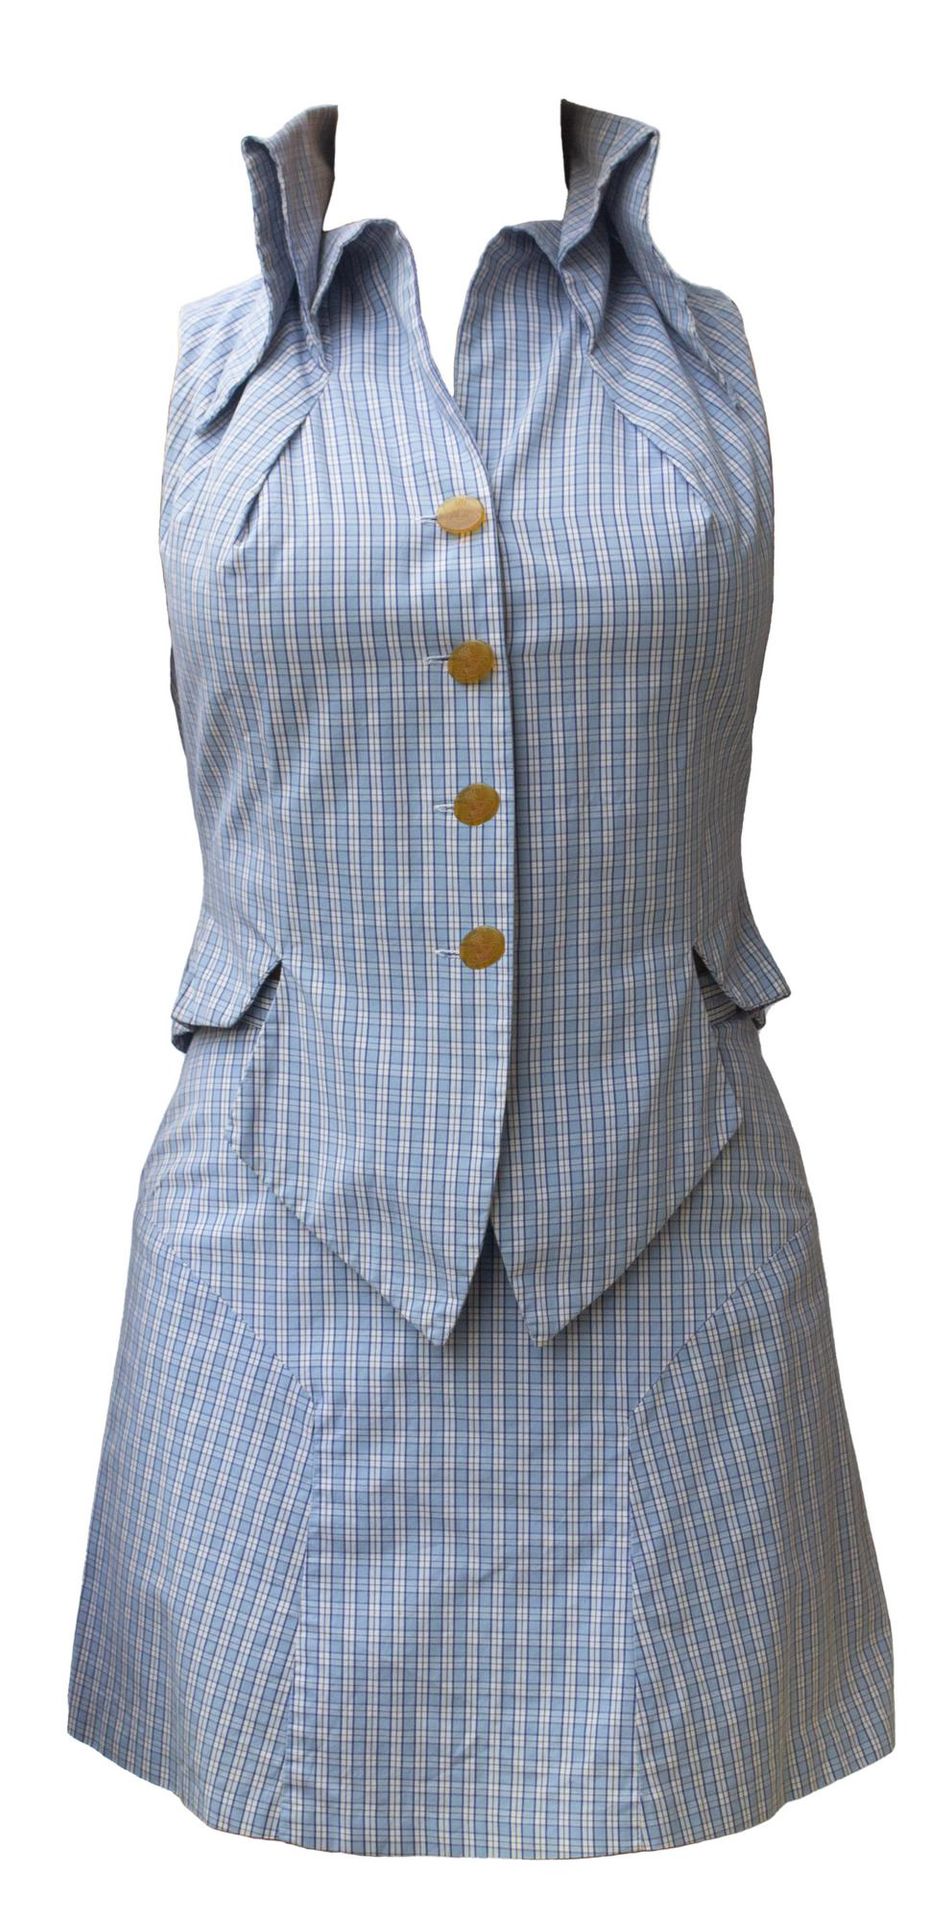 Null 薇薇安-韦斯特伍德

衬衫套装



描述。

带重要领子的马甲和后面有褶皱的喇叭迷你裙，采用意大利制造的淡蓝色小格子的精细托马斯-梅森衬衣面料。来自&hellip;